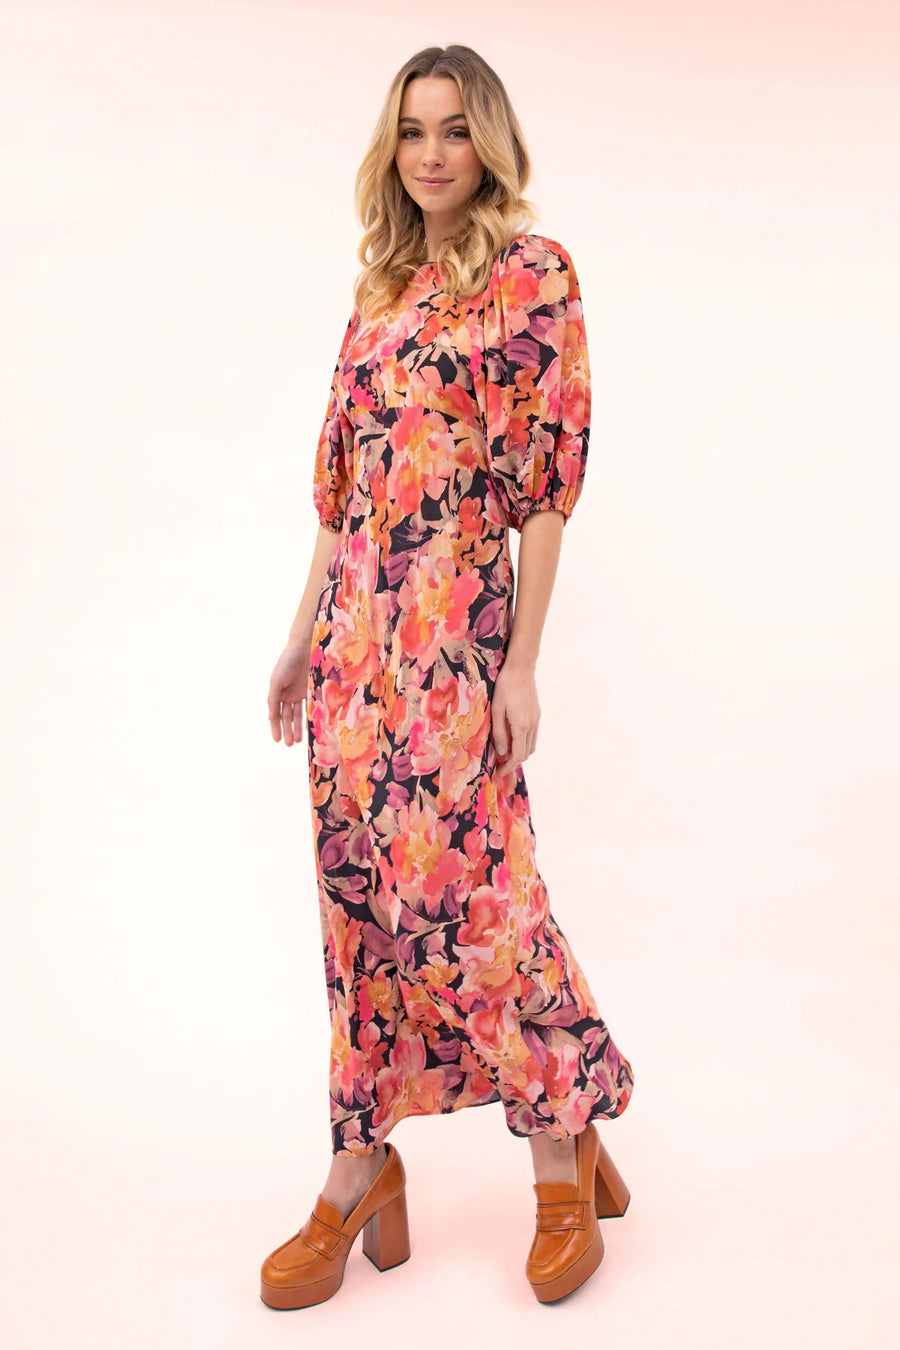 Kachel Ophelia Dress - Valentine